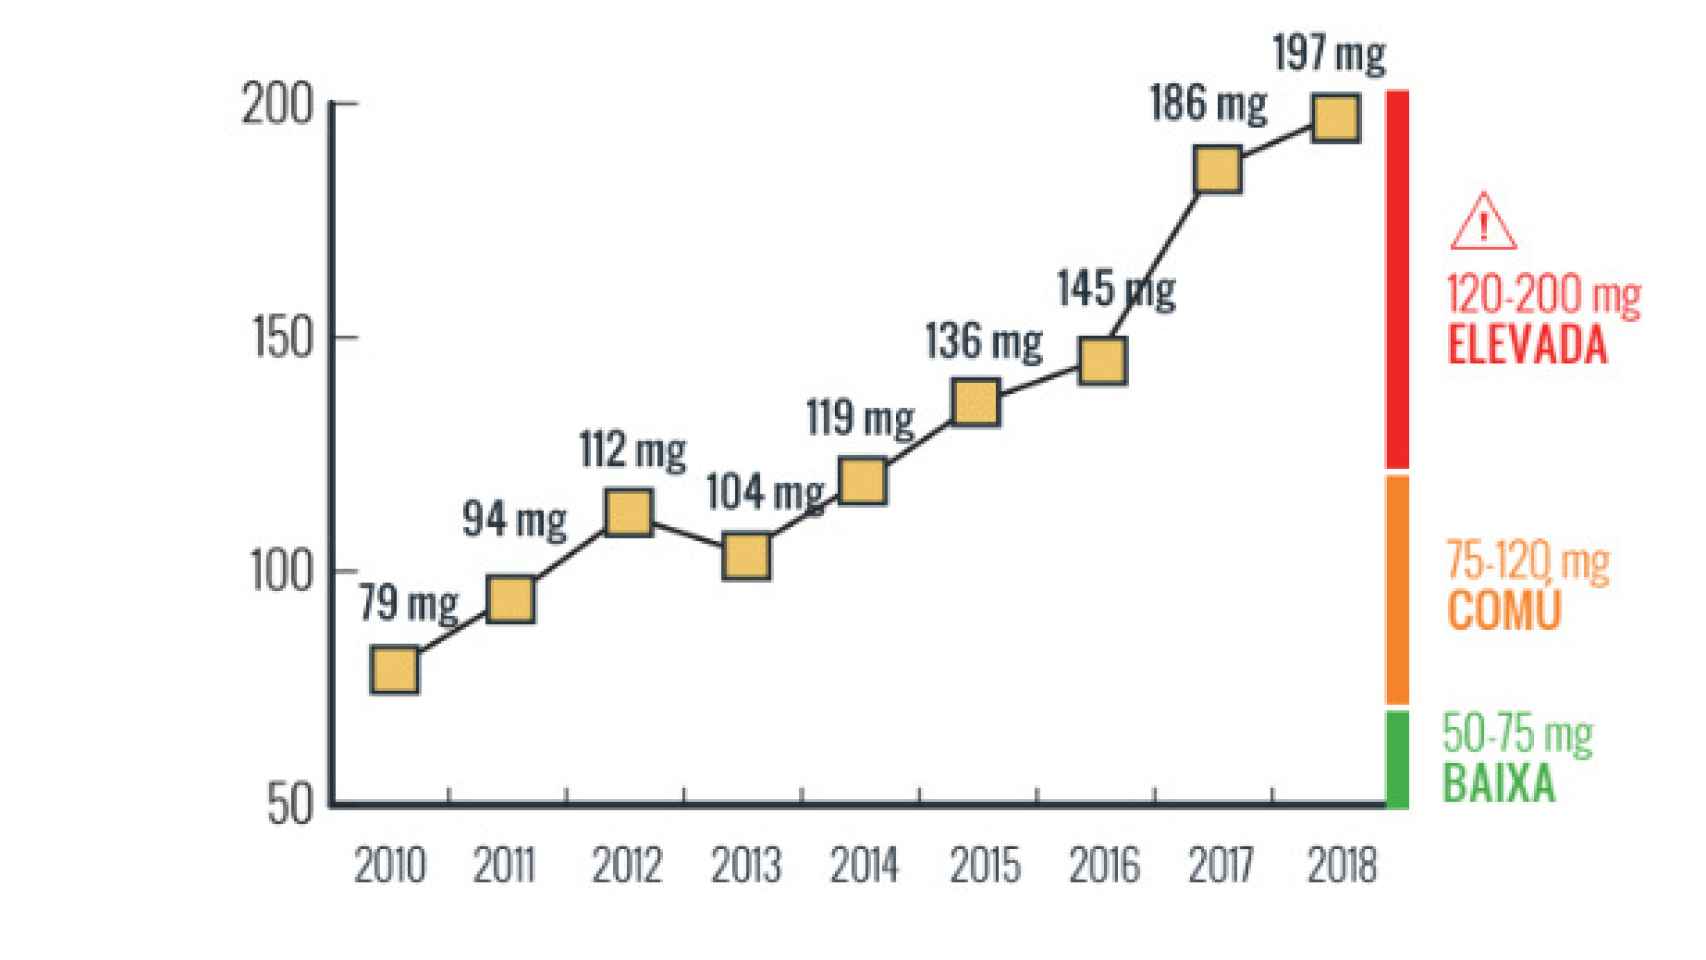 Evolución de la cantidad de MDMA por pastilla en los últimos años